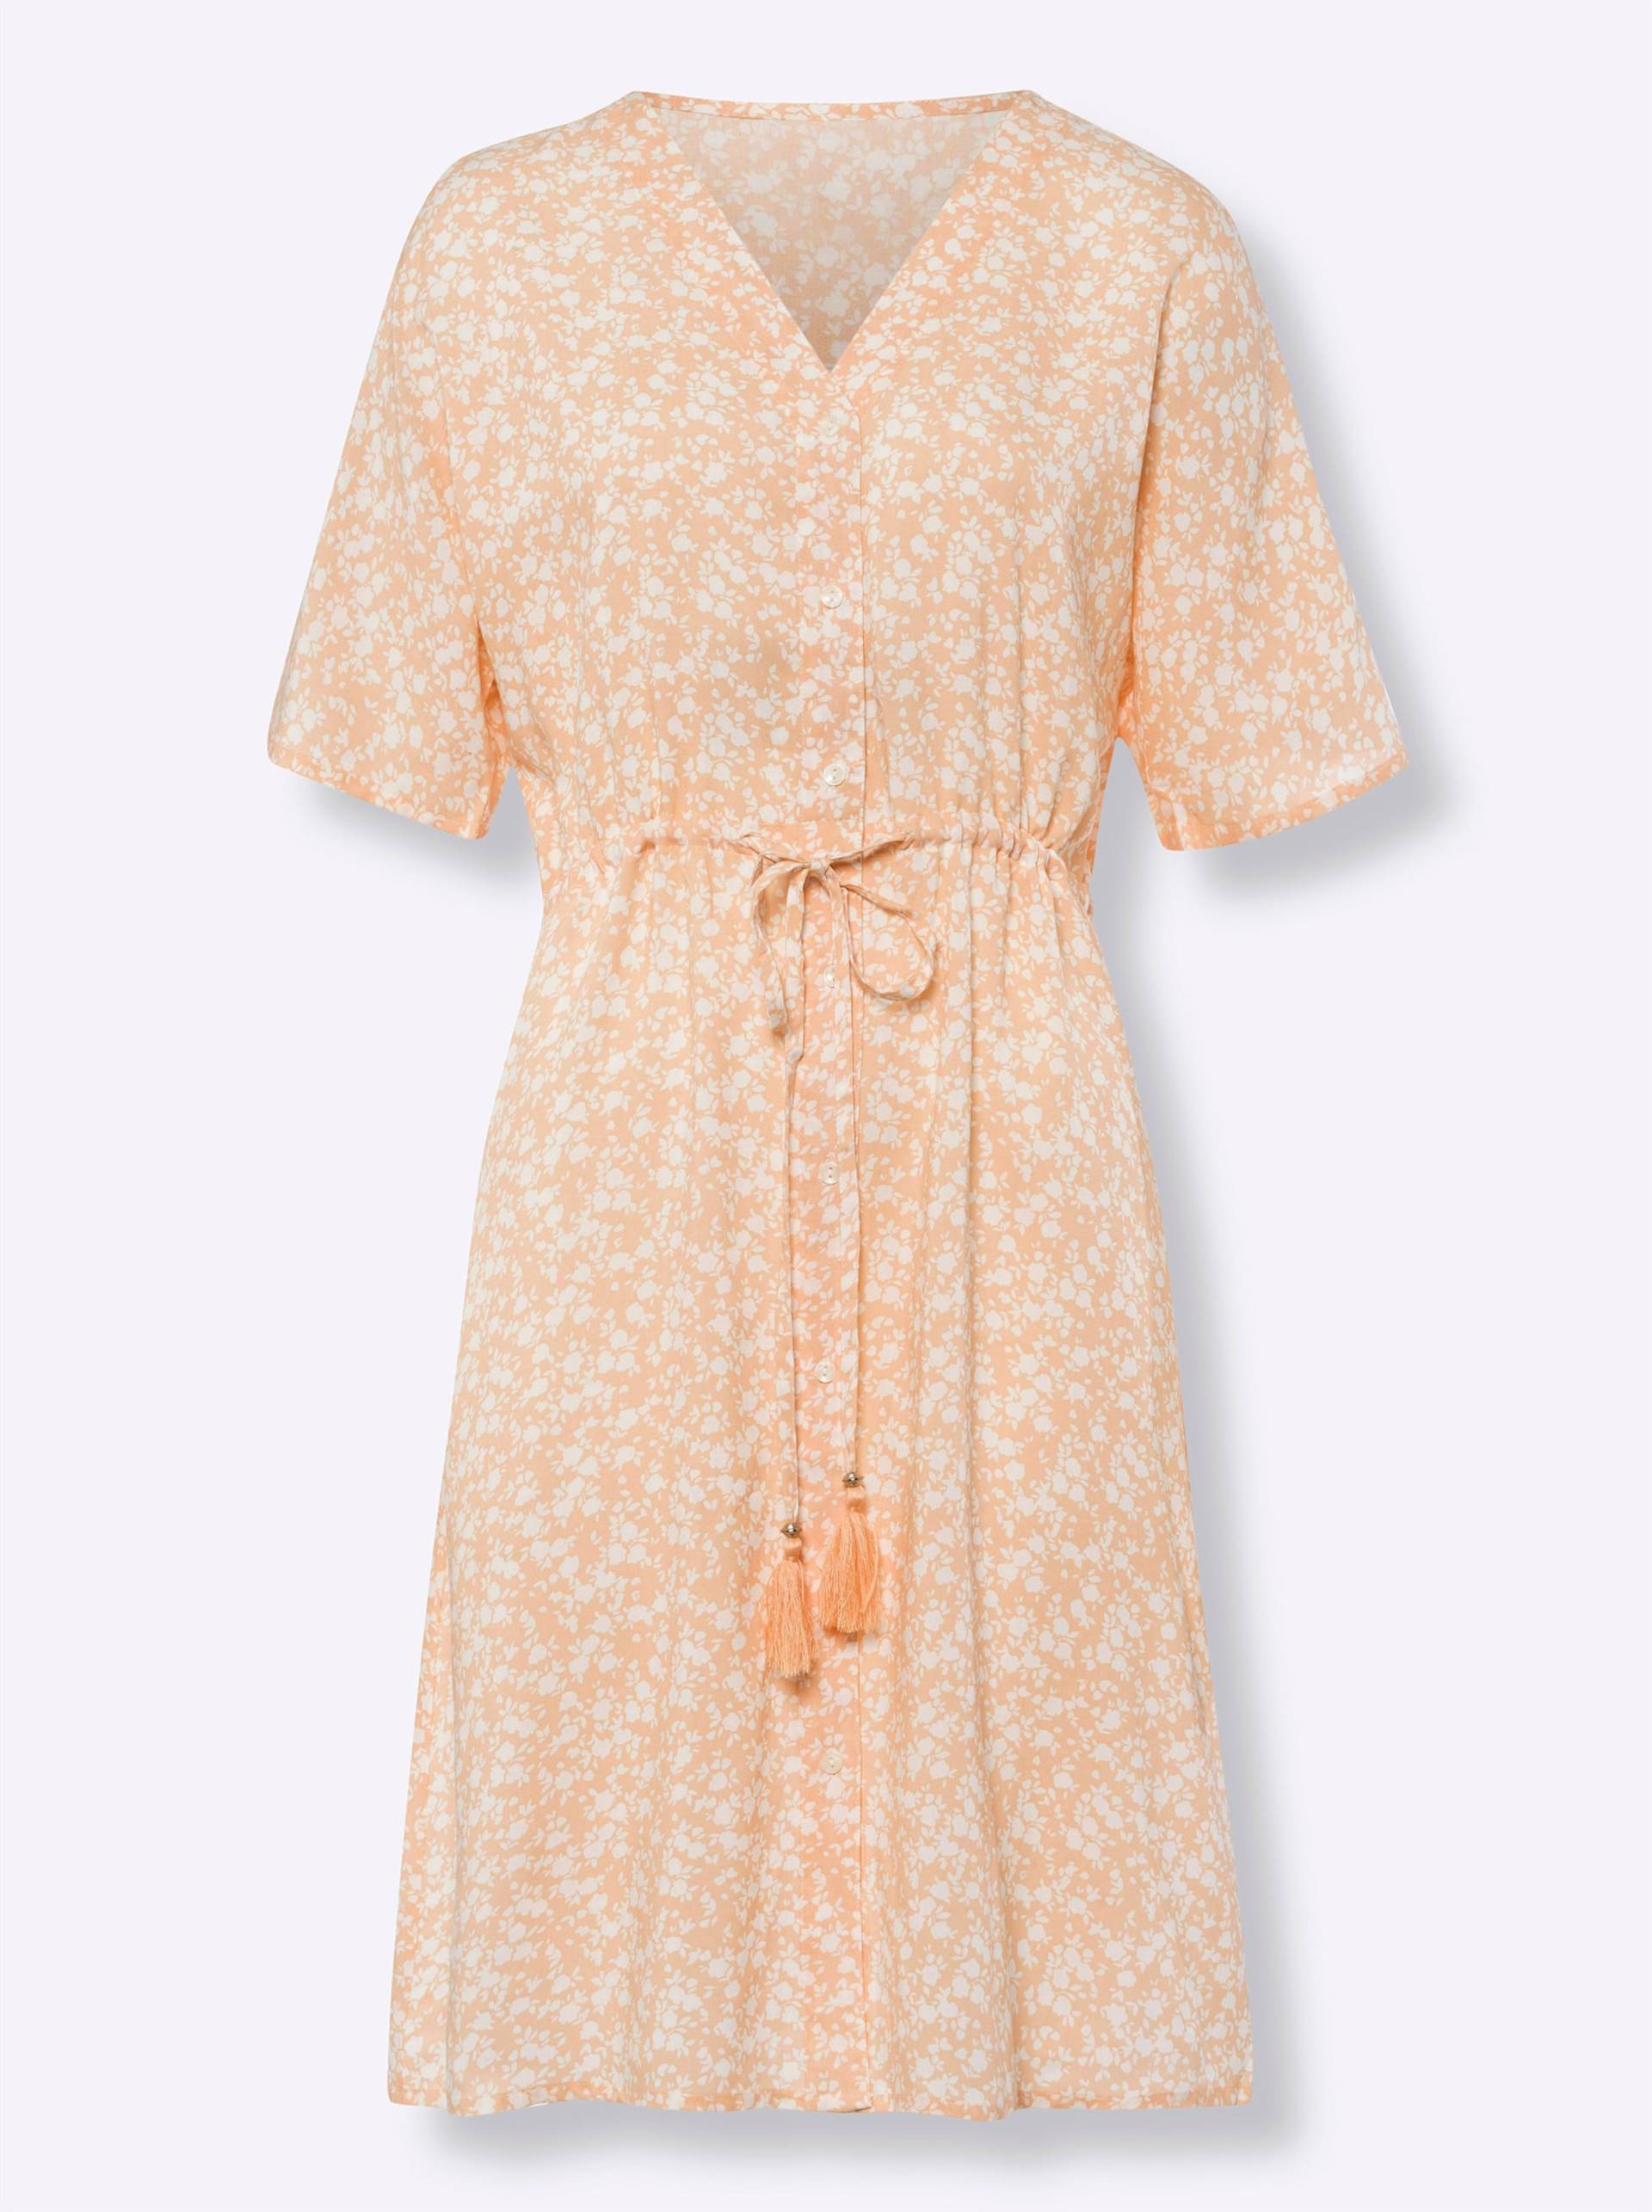 Druck-Kleid in apricot-ecru-bedruckt von heine